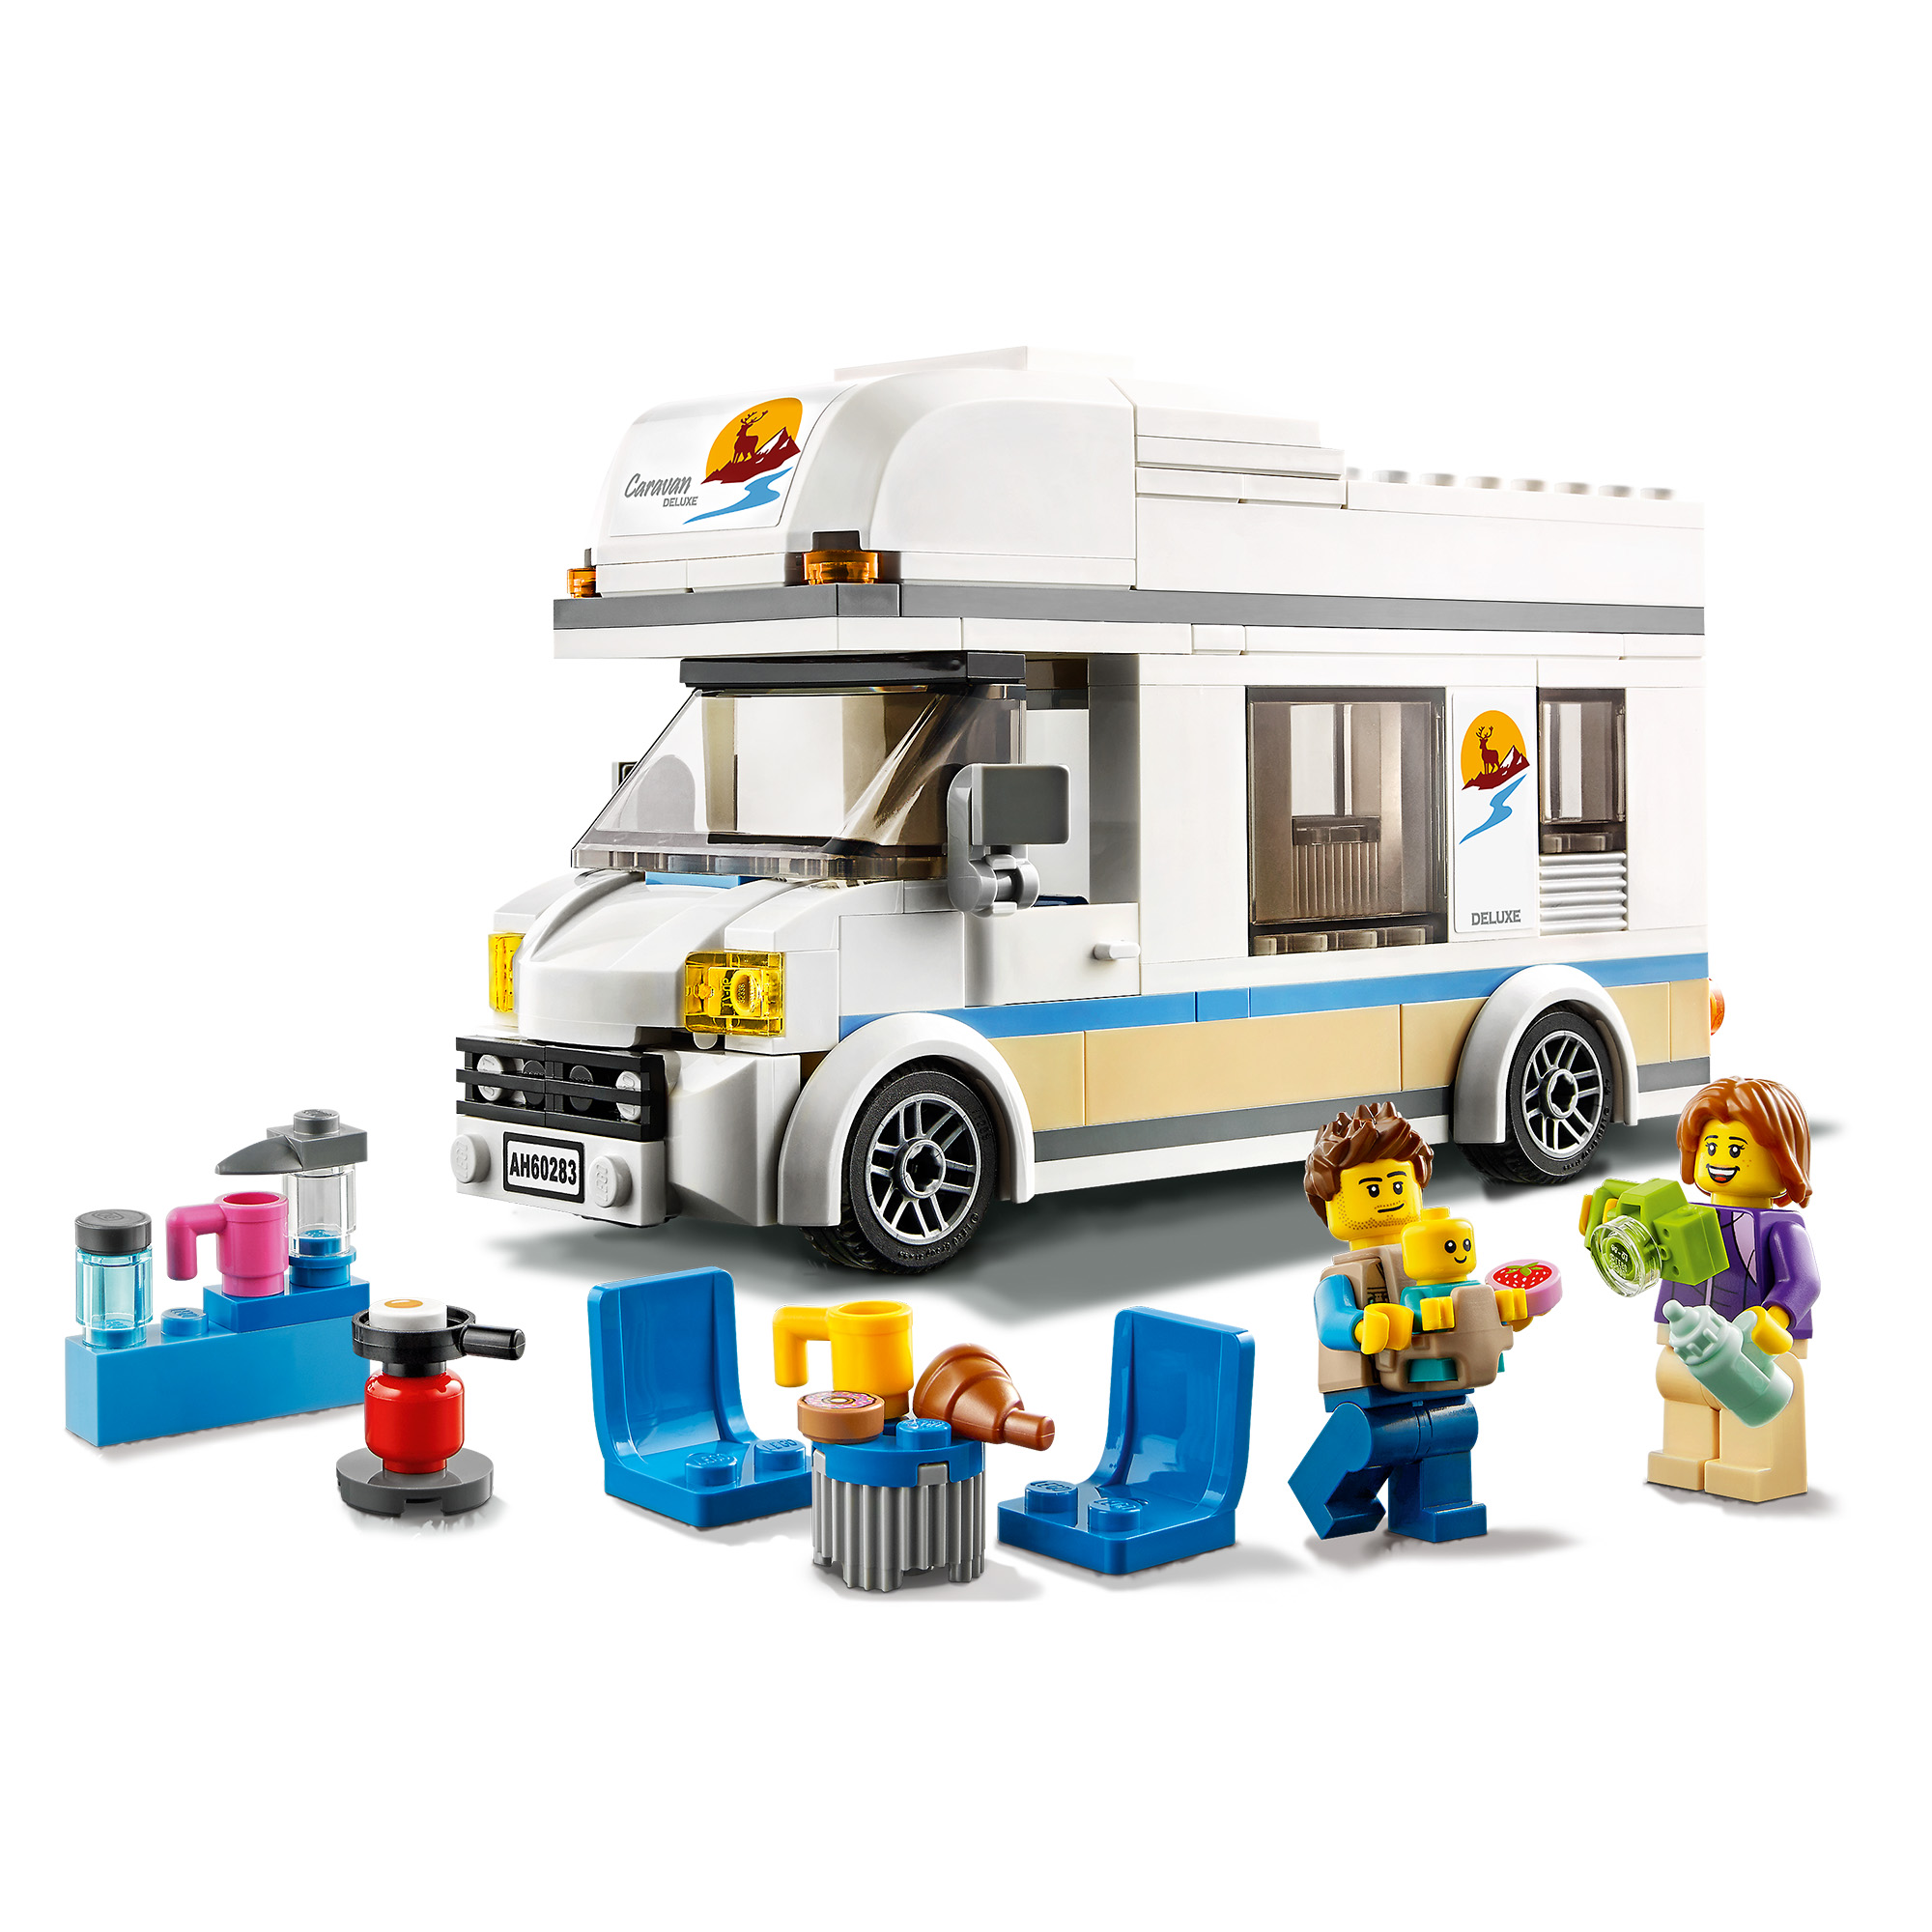 Lego city 60283 camper delle vacanze, set di costruzioni con roulotte giocattolo e minifigure, giochi per bambini, idee regalo - LEGO CITY, Lego